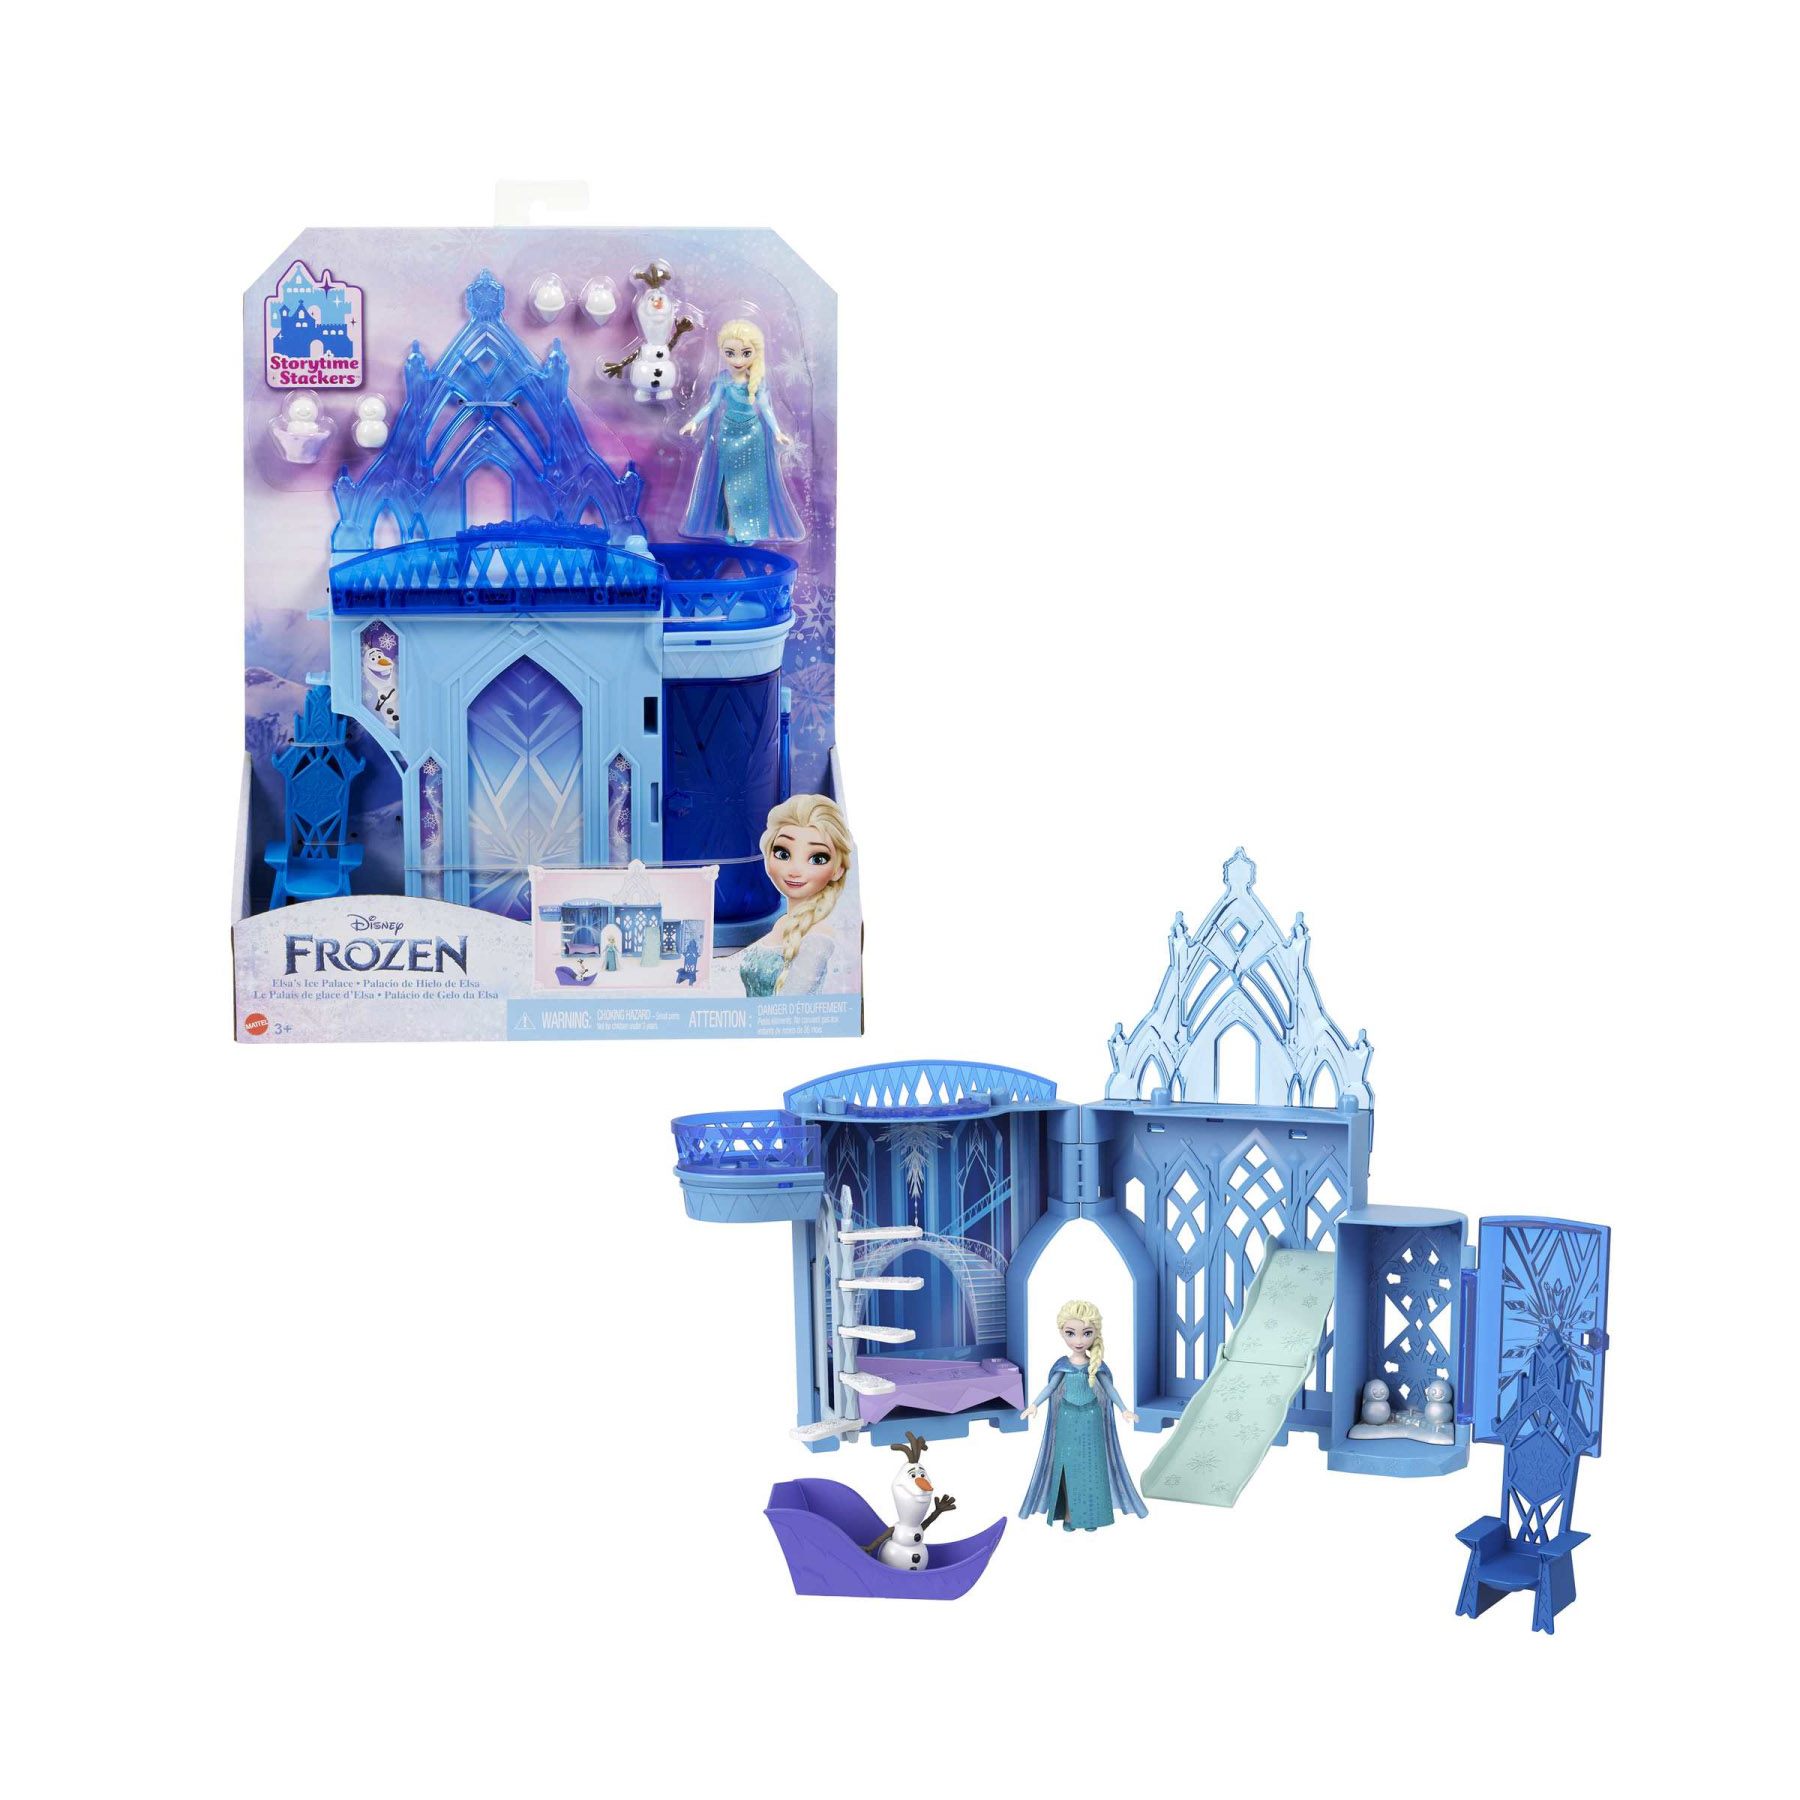 Set Componibili Palazzo di Ghiaccio di Elsa, Playset con Mini Bambola Elsa,  Olaf e accessori, Disney Frozen in Vendita Online